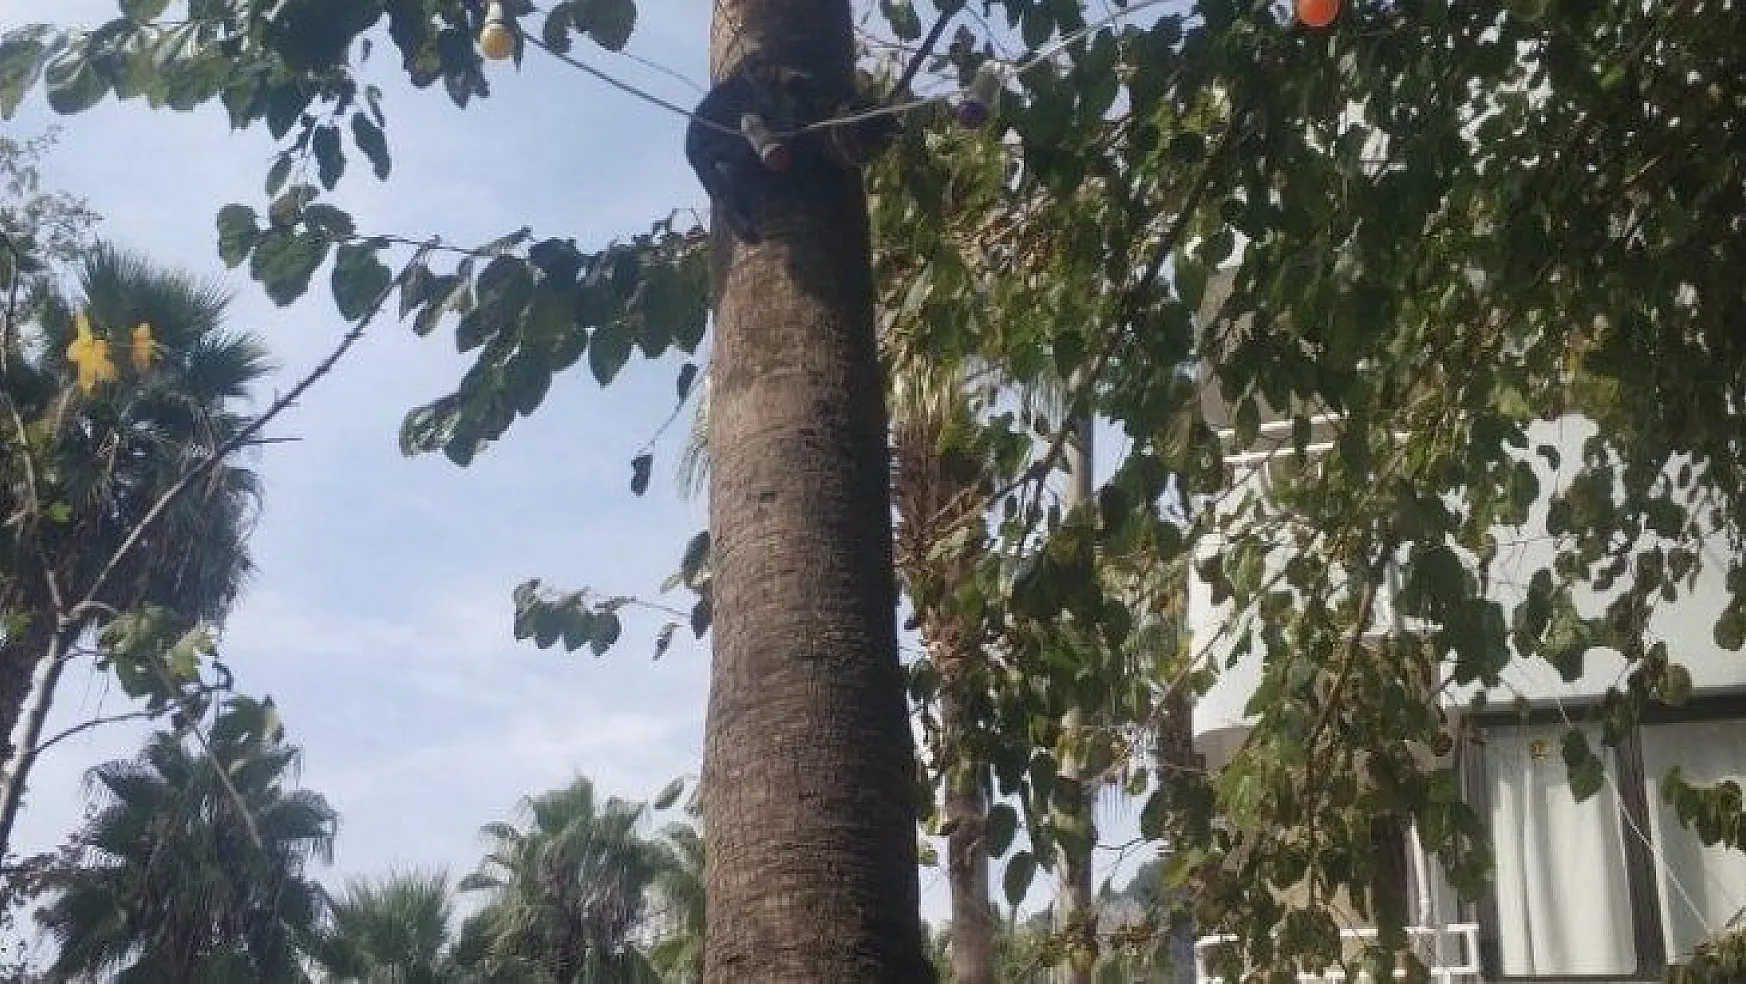 Ağaçta mahsur kalan kedi kurtarıldı